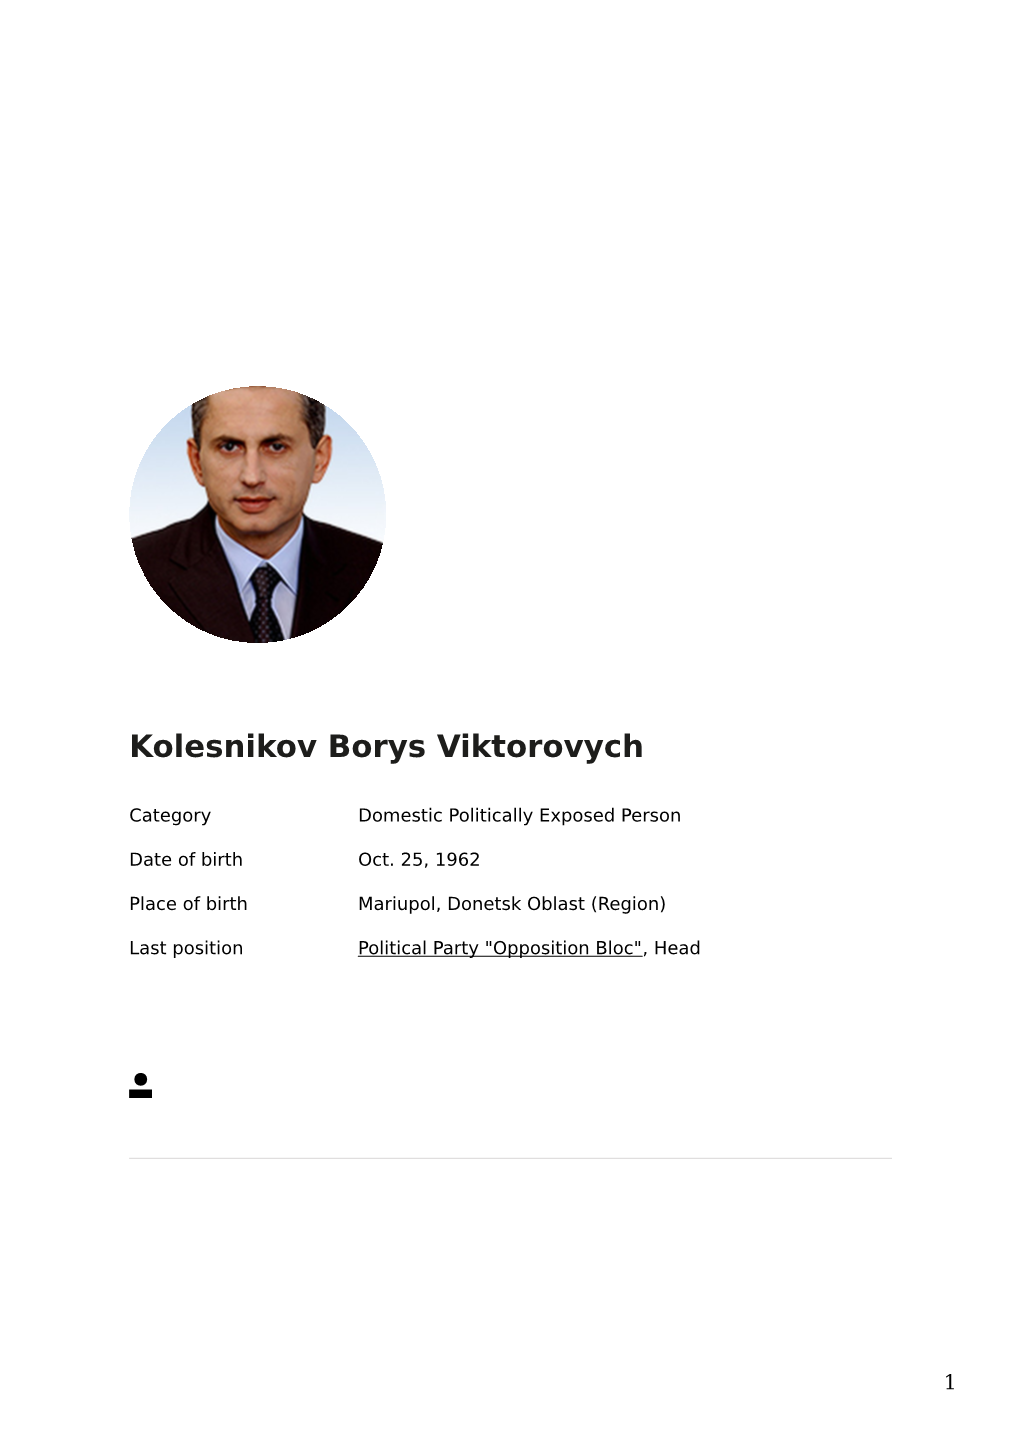 PEP: Dossier Kolesnikov Borys Viktorovych, Political Party